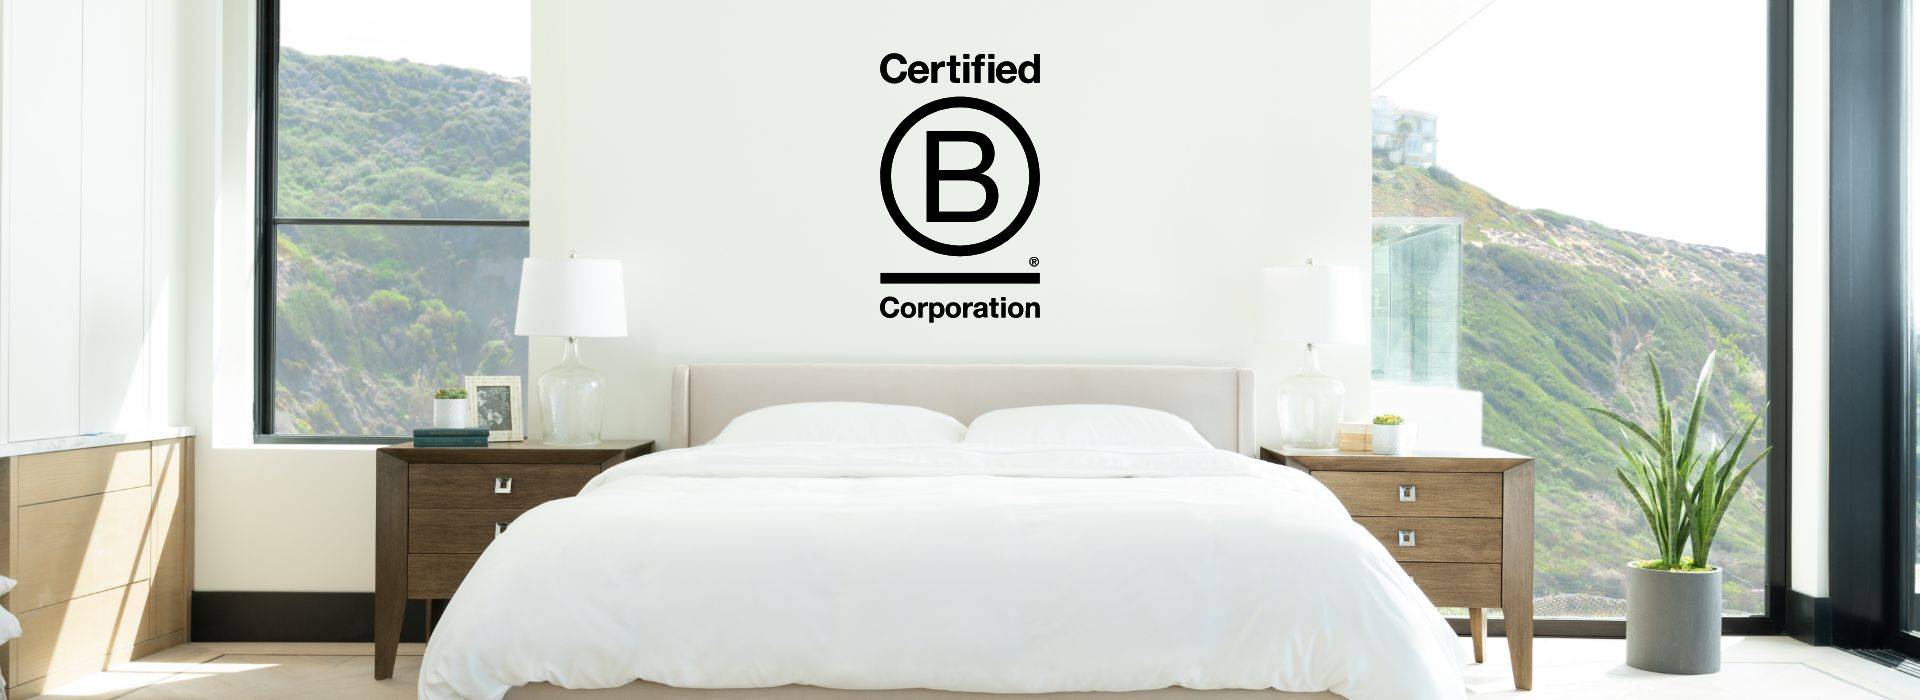 corporação b certificada